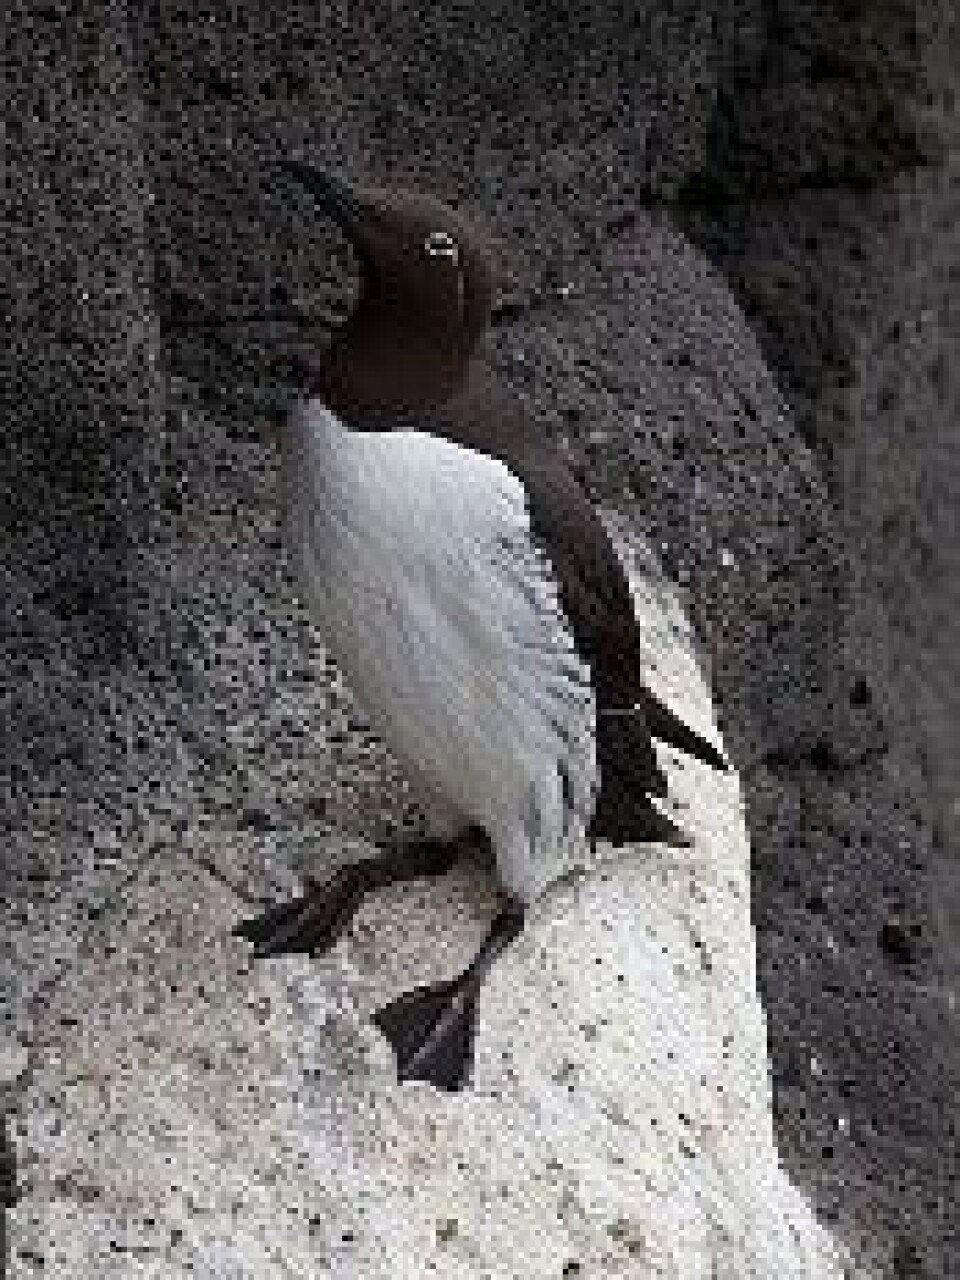 Forskerne tror den pingvinlignende fuglen Iomvi kan være den neste som mister flygeevnen. (Foto: Boaworm/Wikimedia Commons)